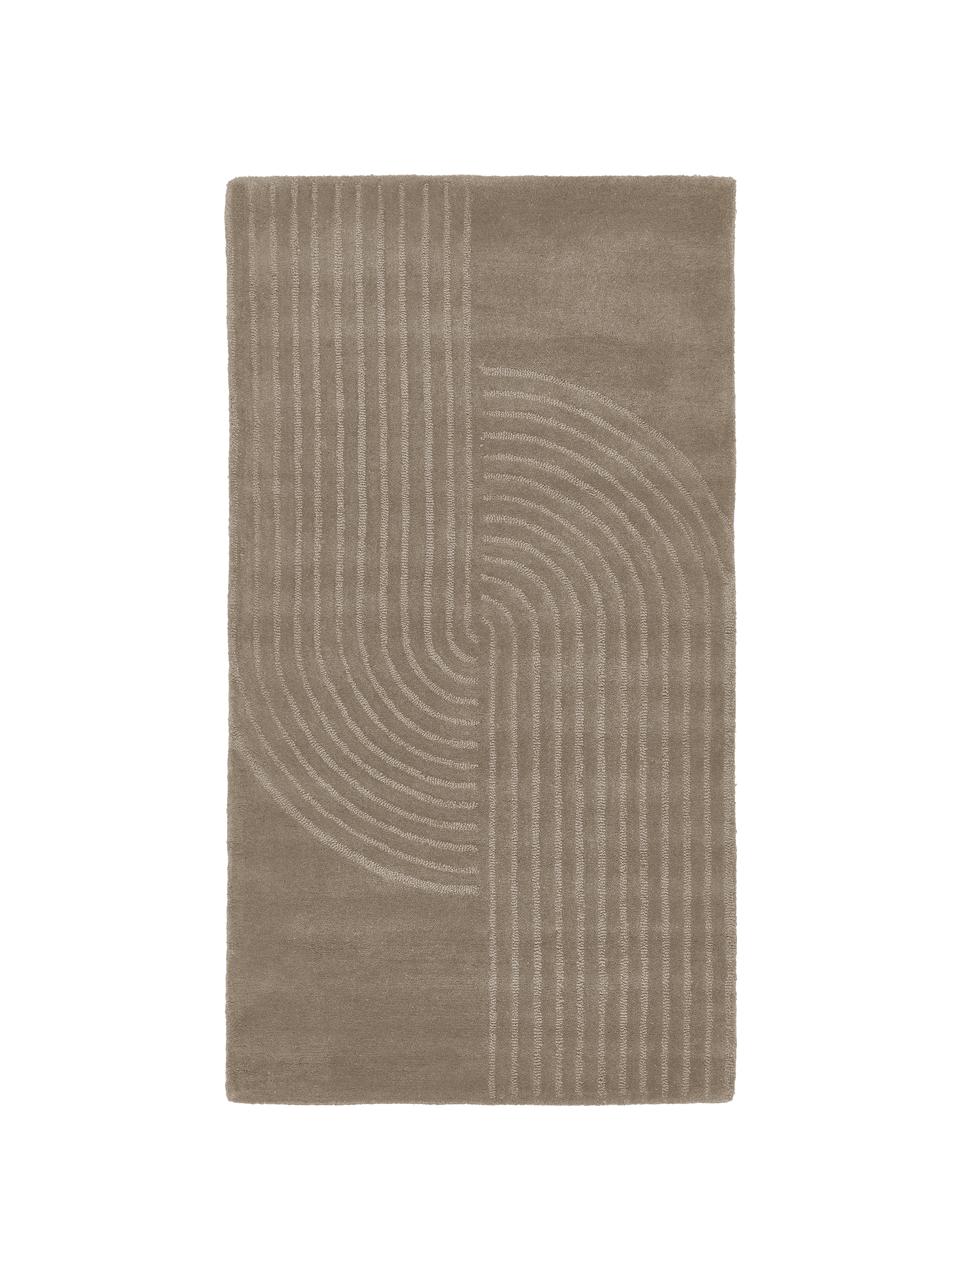 Tapis laine taupe tufté main Mason, Beige, larg. 80 x long. 150 cm (taille XS)